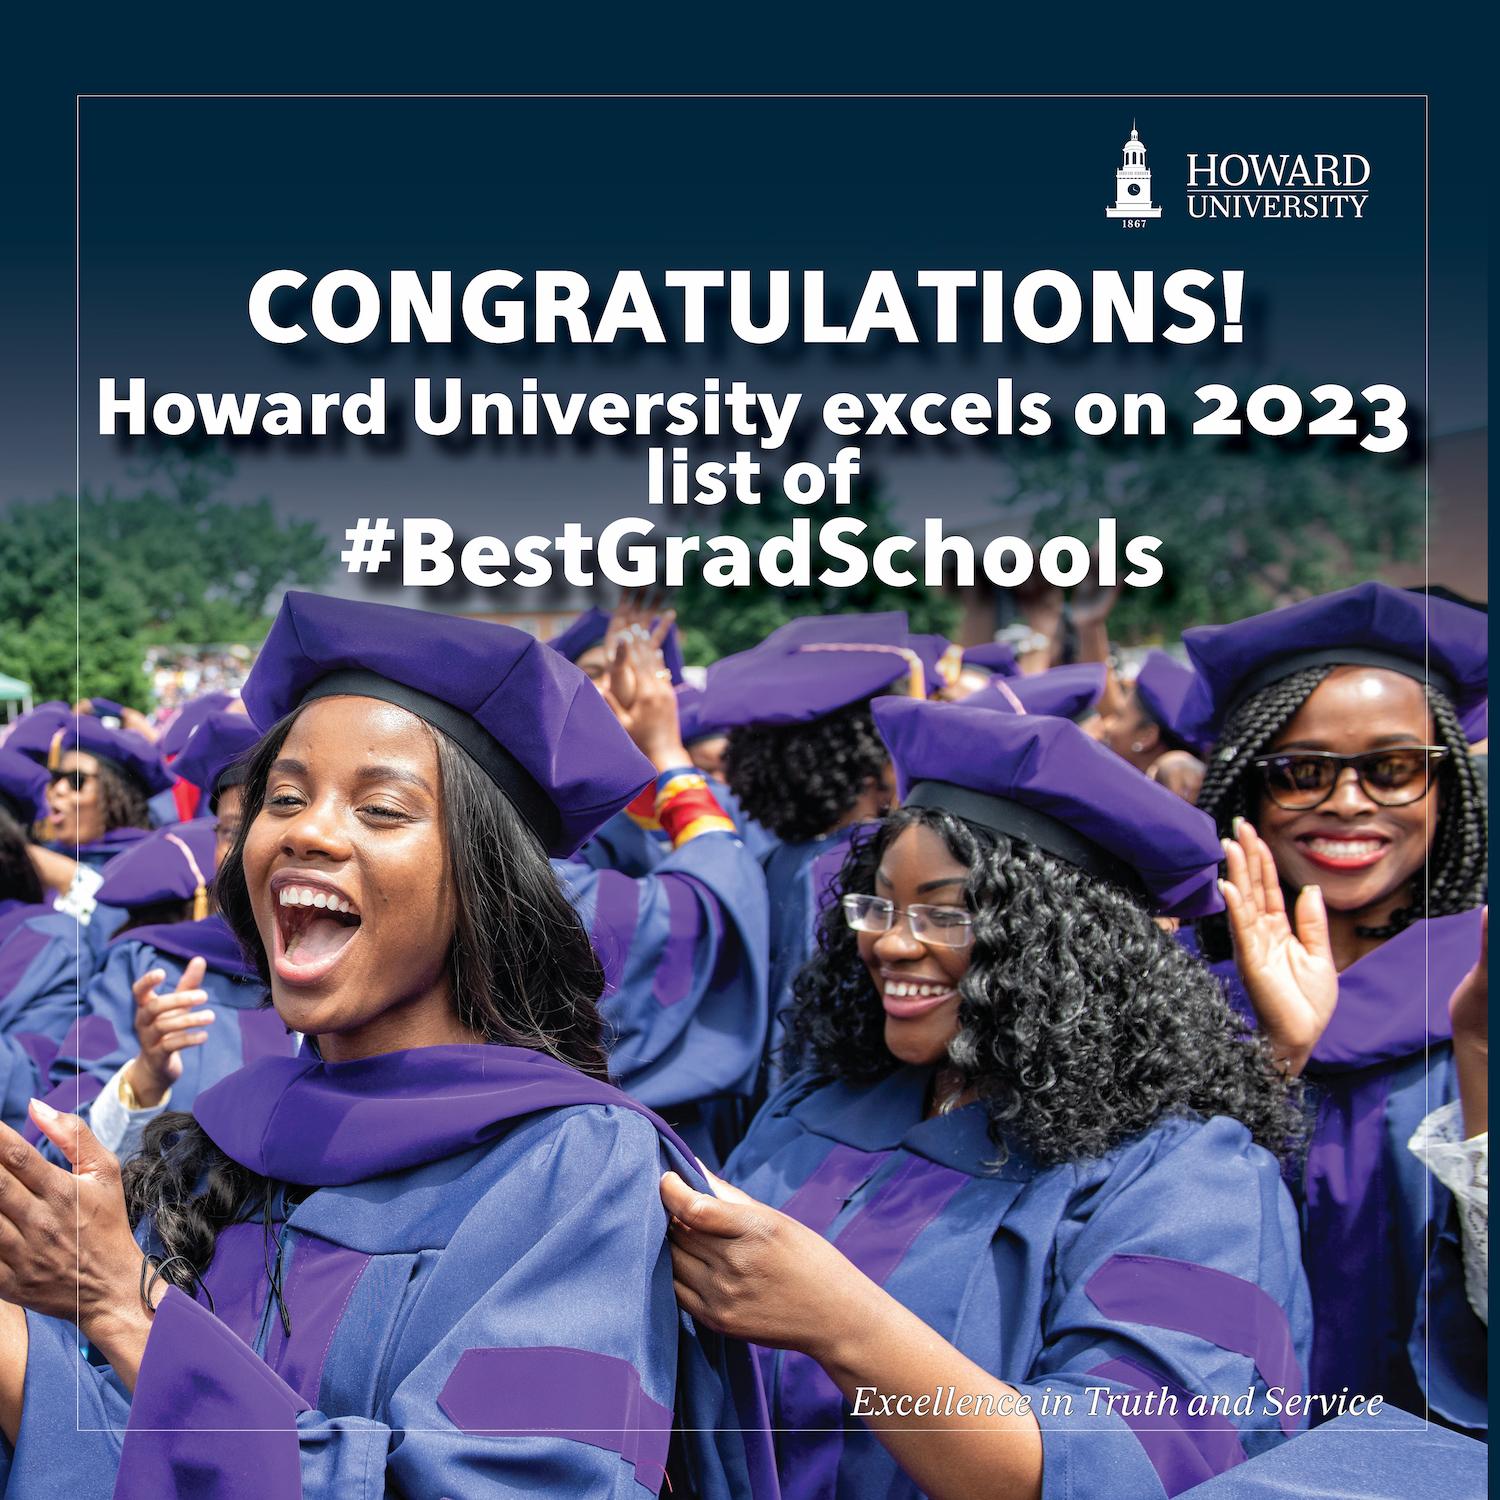 Congratulations! Howard University excels in 2023 list of #BestGradSchools